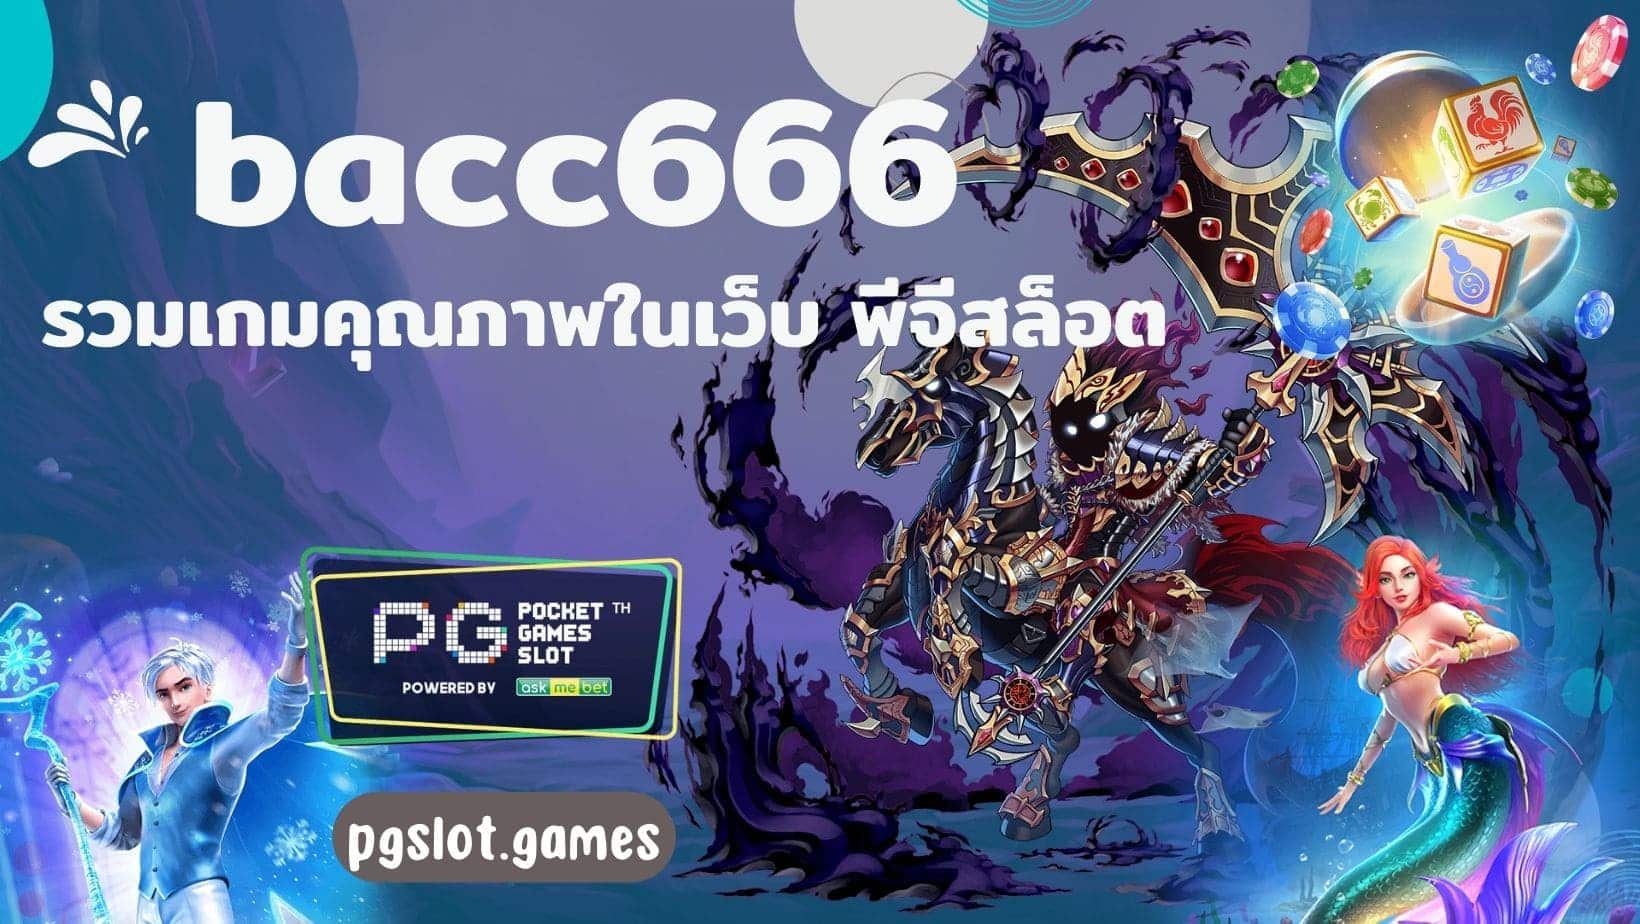 bacc666 รวมเกมคุณภาพในเว็บ พีจีสล็อต